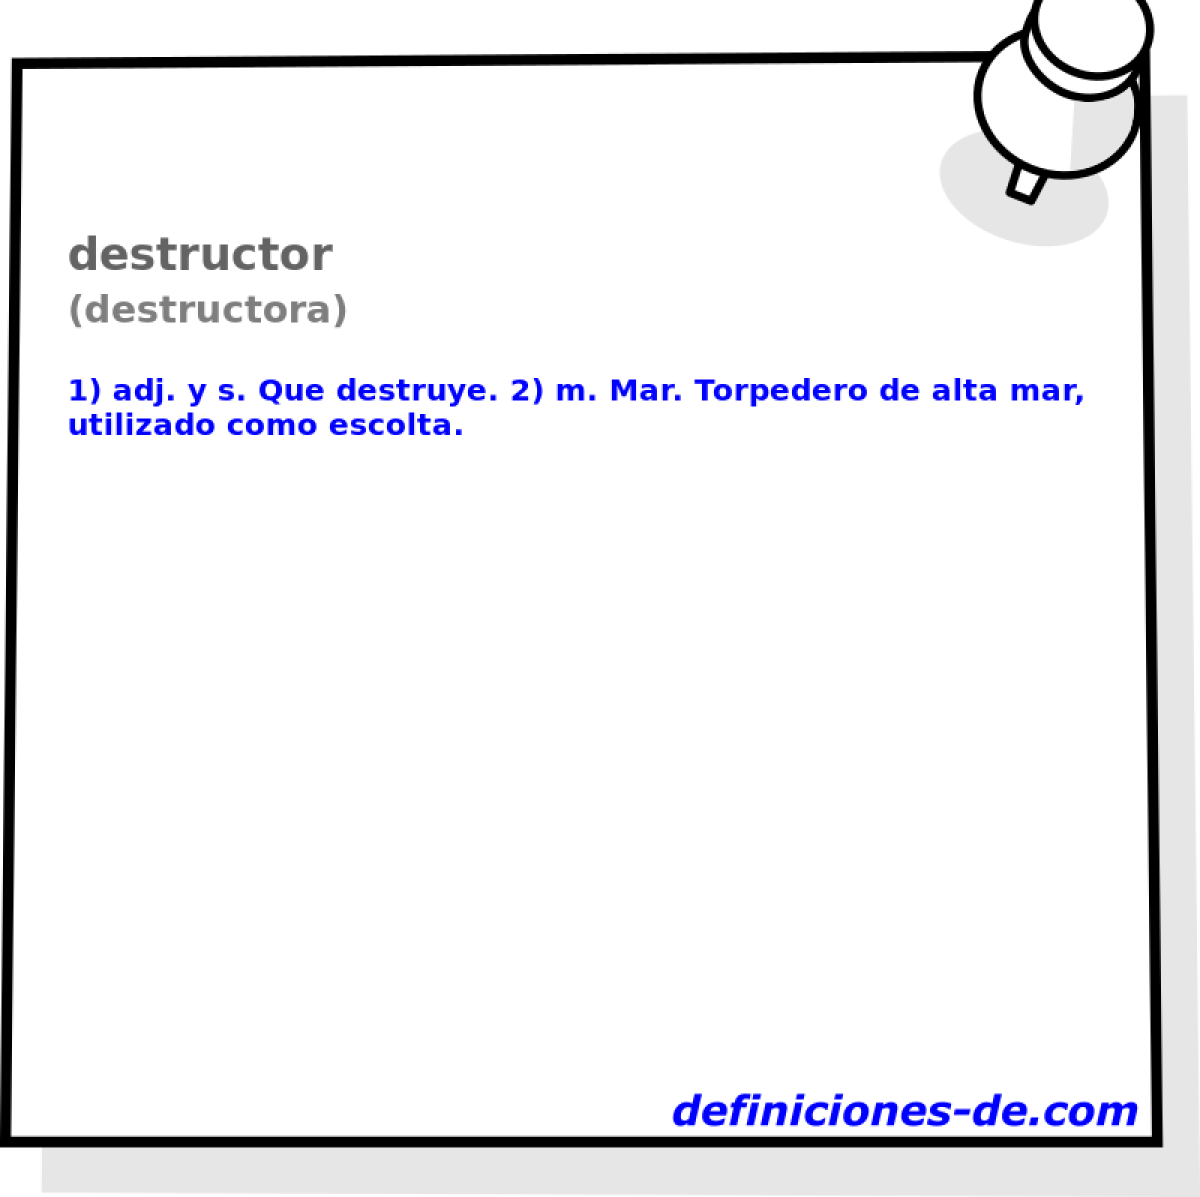 destructor (destructora)